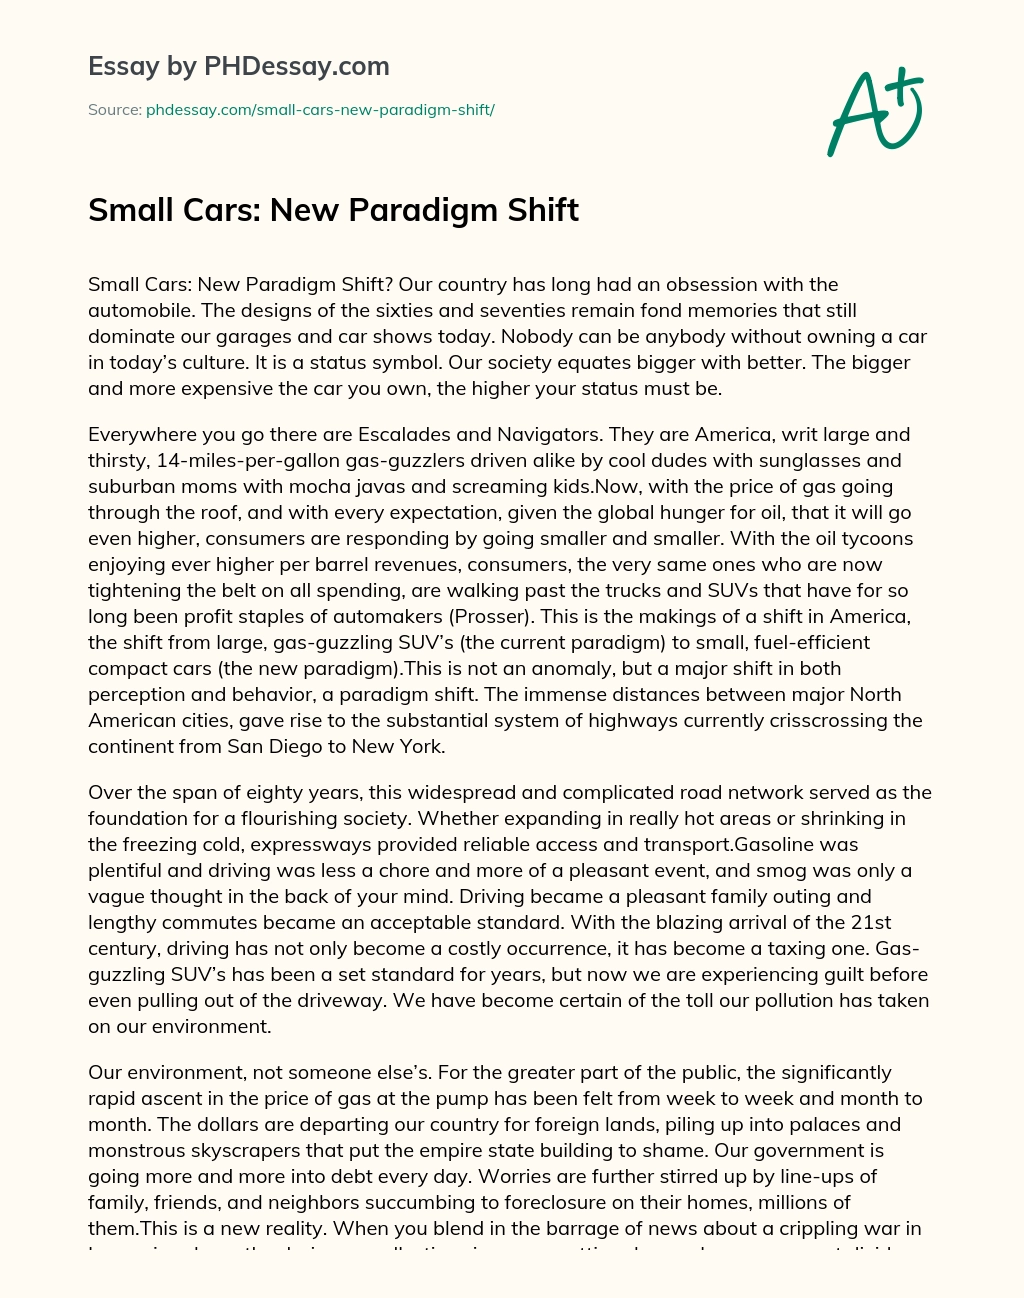 Small Cars: New Paradigm Shift essay